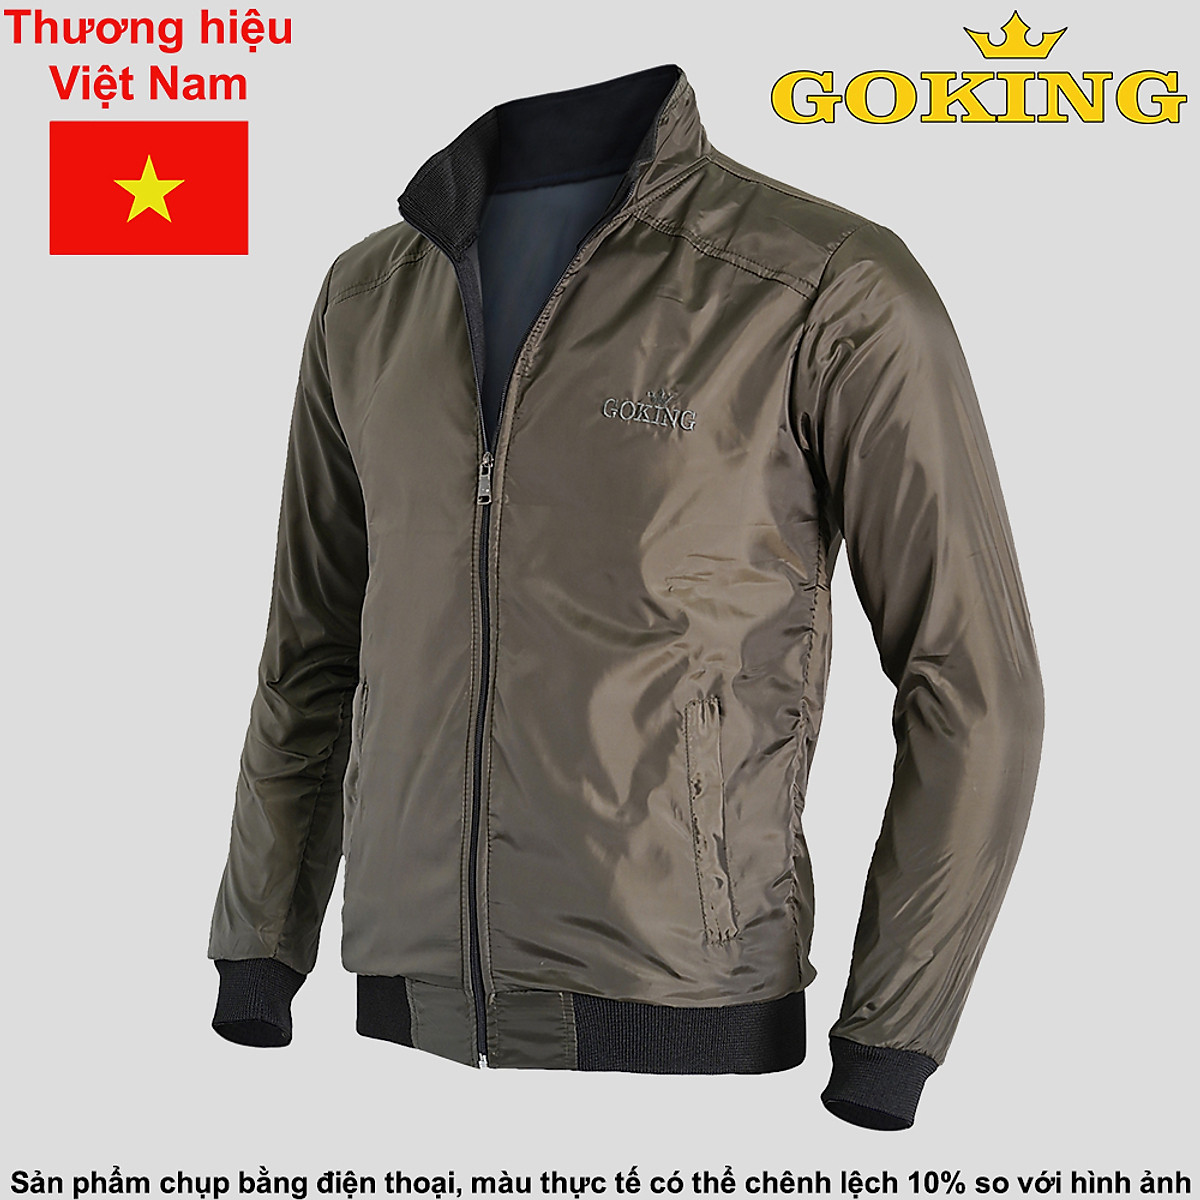 Áo khoác dù cách nhiệt GOKING cho nam nữ, áo khoác gió hàng hiệu Việt Nam cao cấp, chống gió lạnh, giữ ấm cơ thể